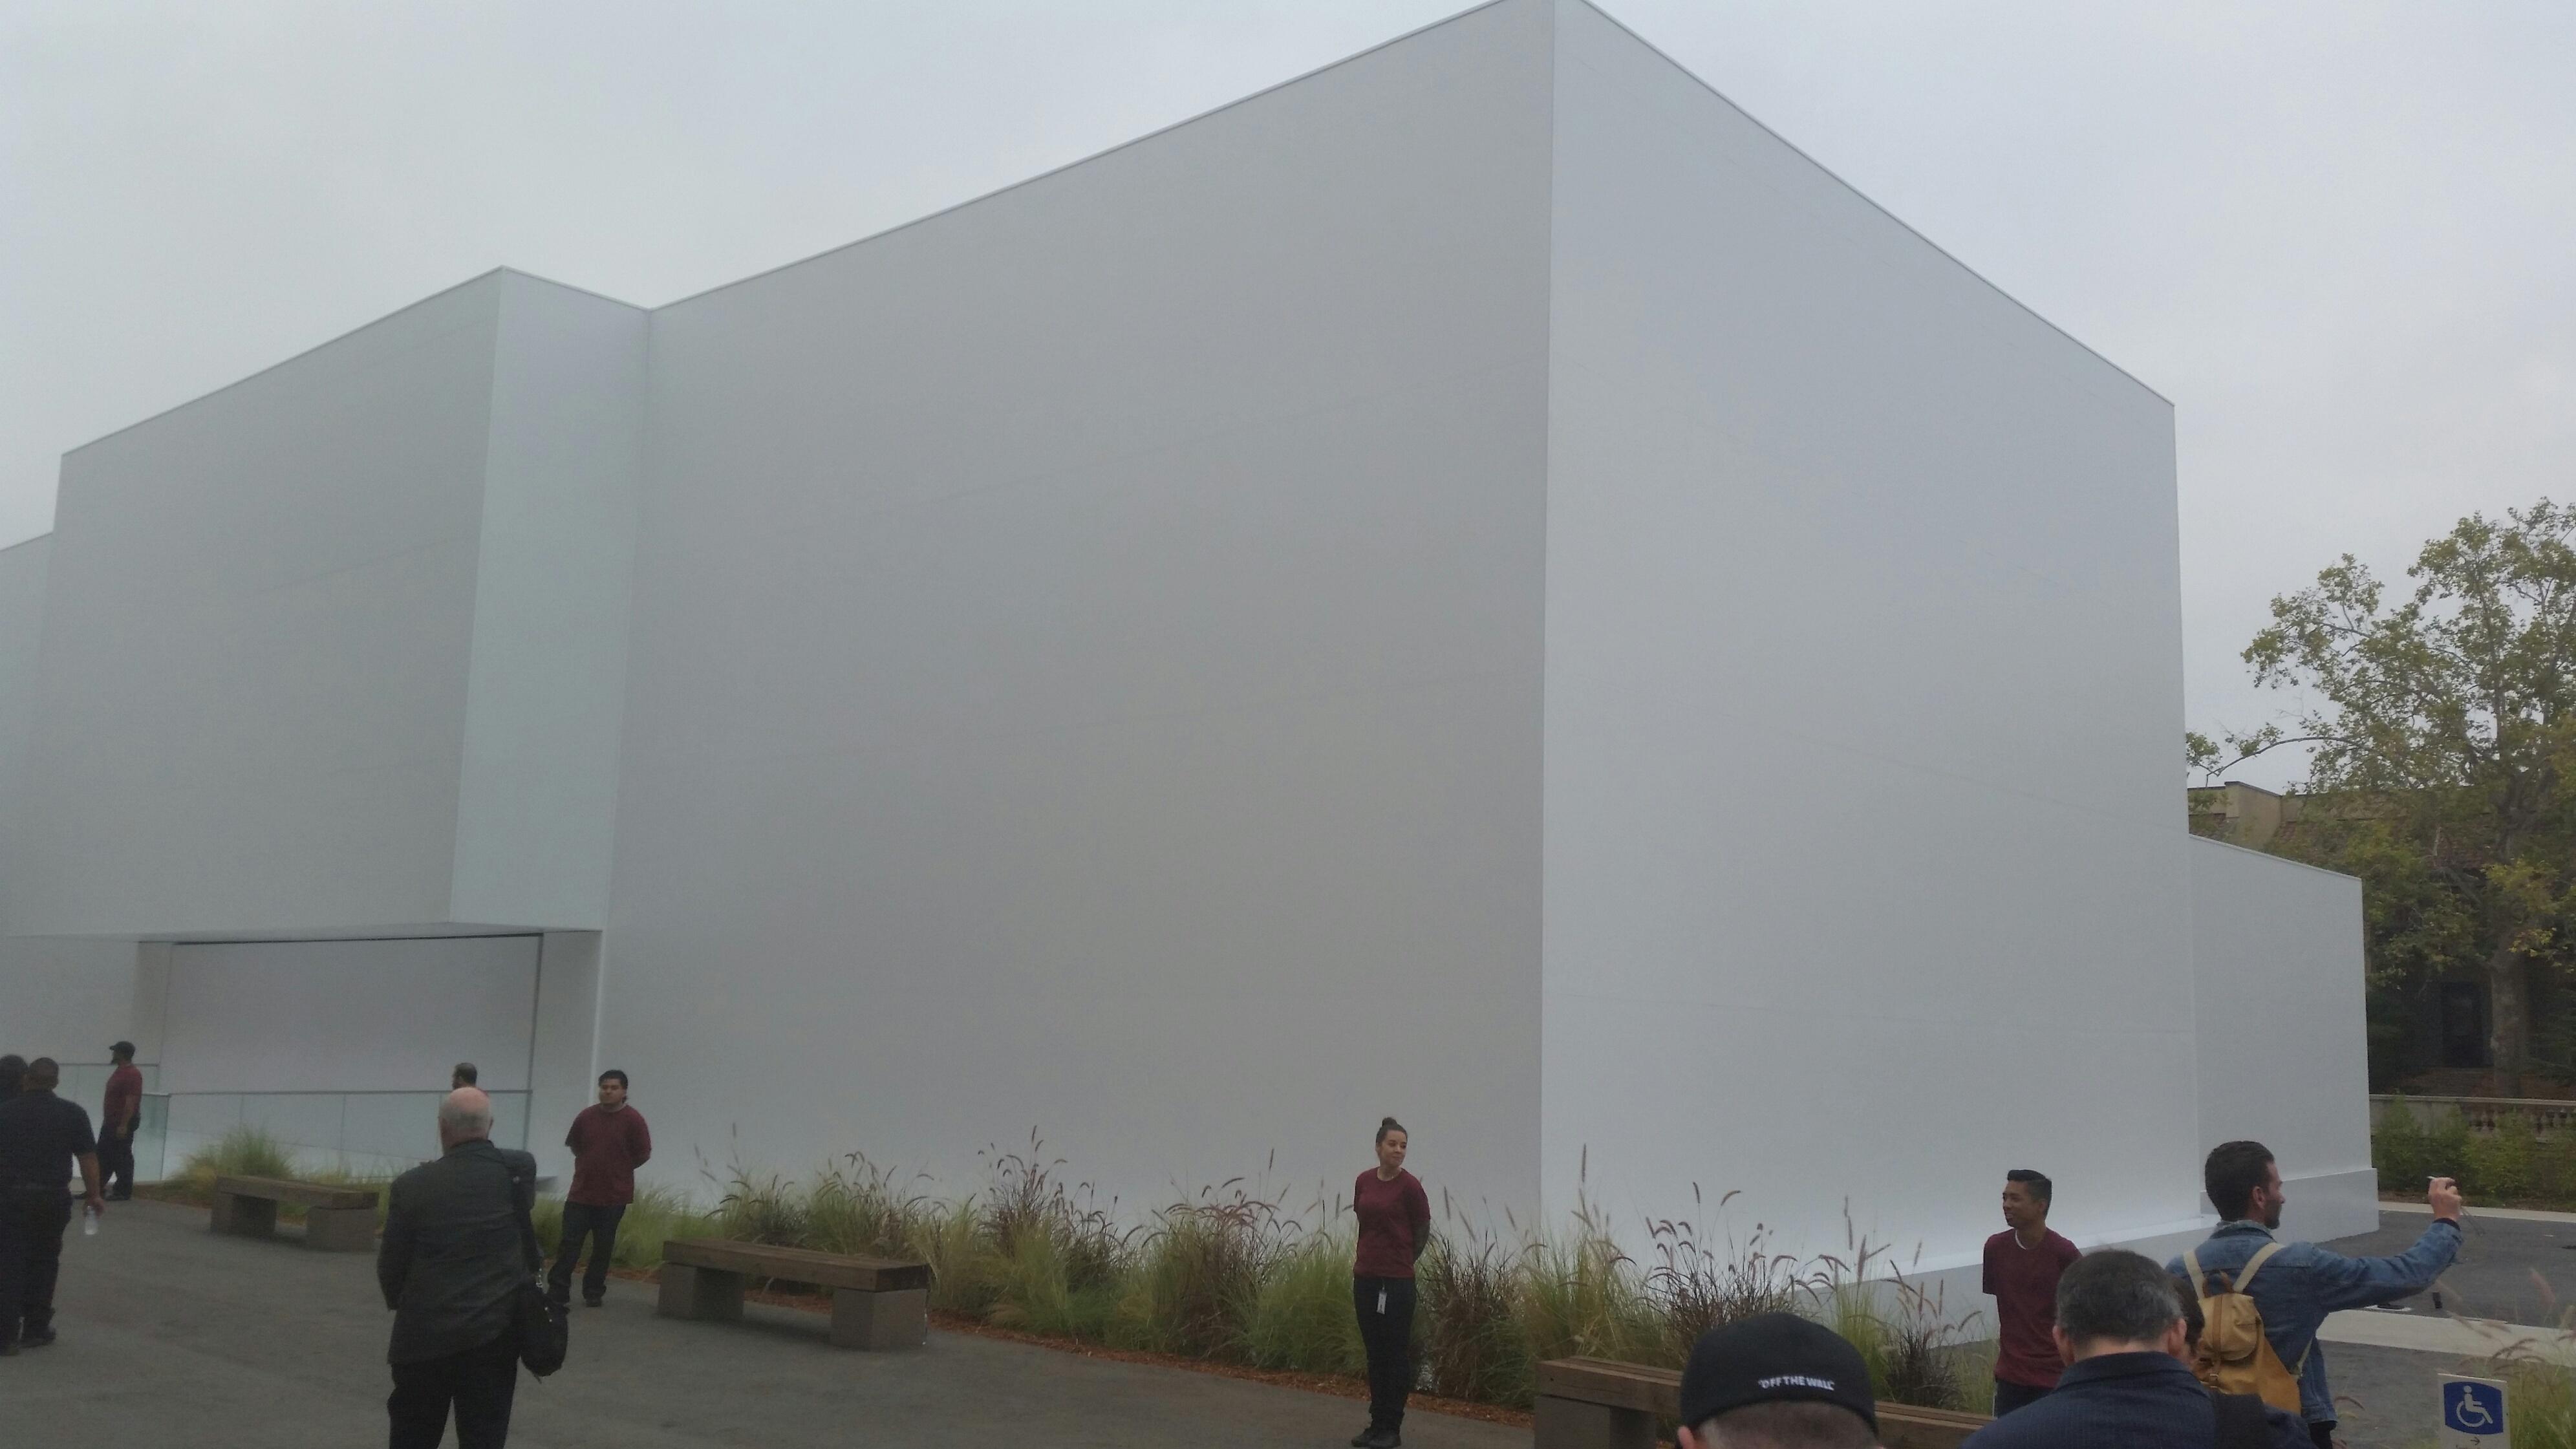 Denne bygningen har Apple satt opp for anledningen. Hva skjer på innsiden?Foto: Finn Jarle Kvalheim, Tek.no